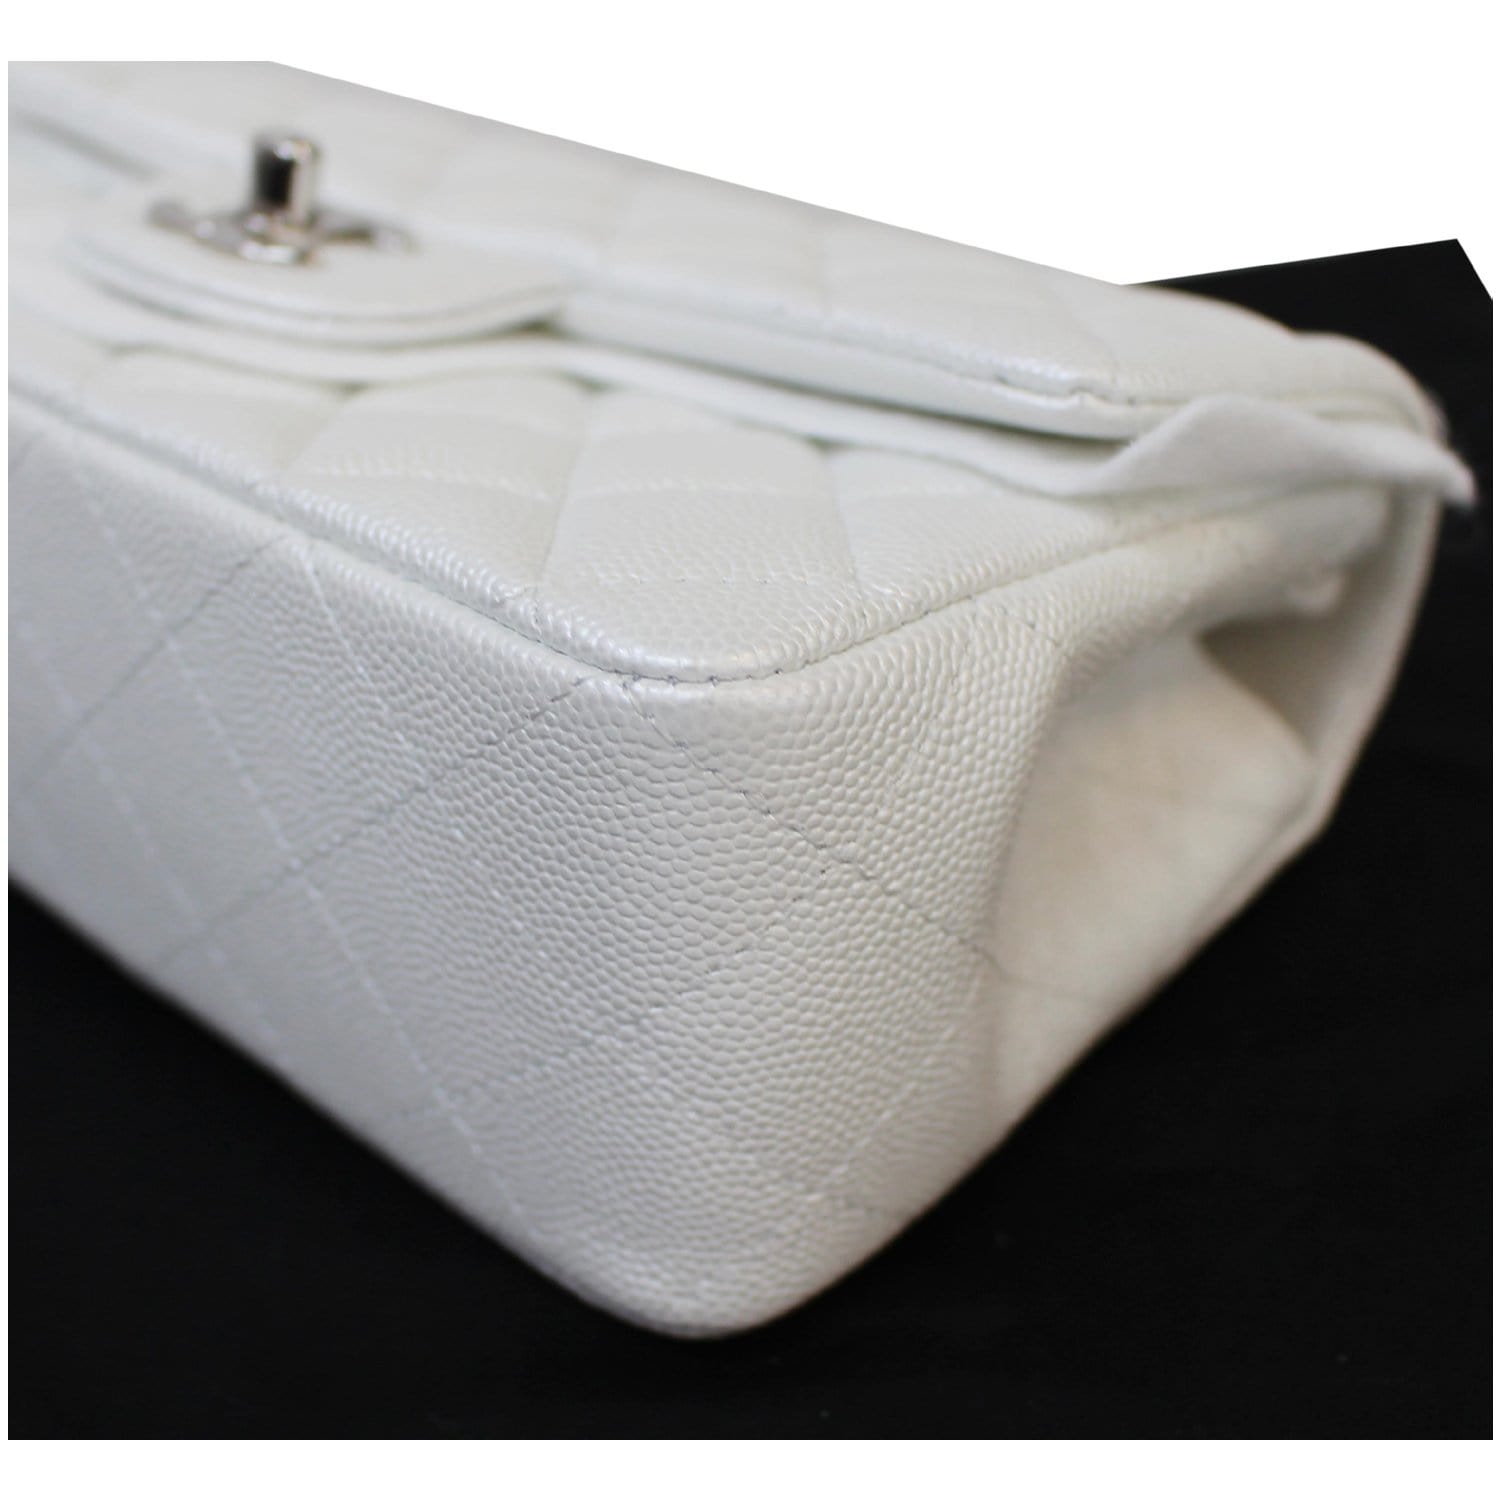 chanel white top handle bag